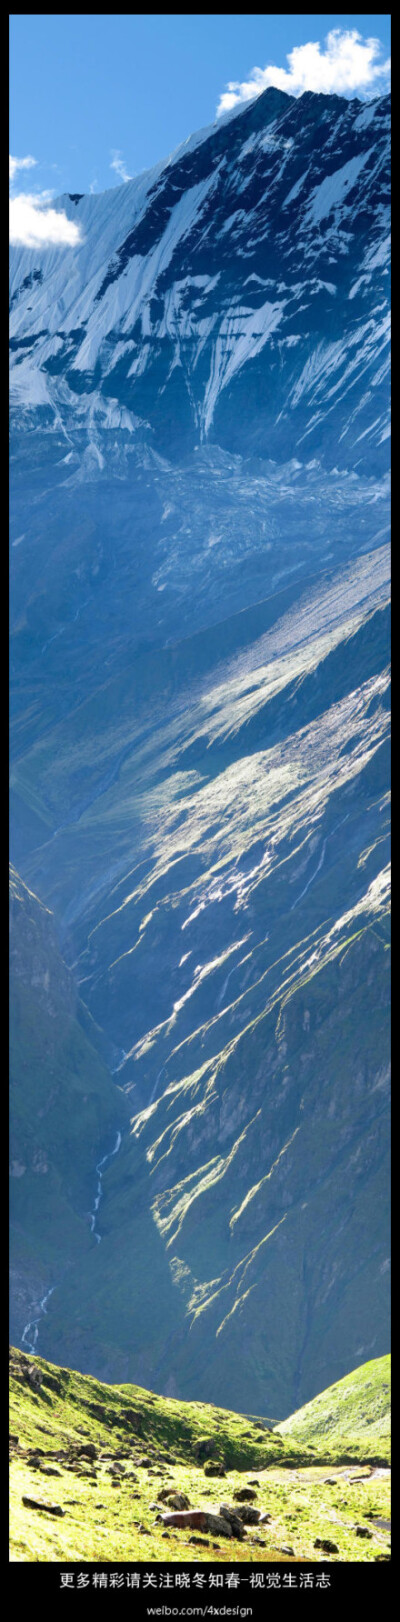 自然-尼泊尔风景，可用来做背景。更多精彩请关注@晓冬知春-视觉生活志